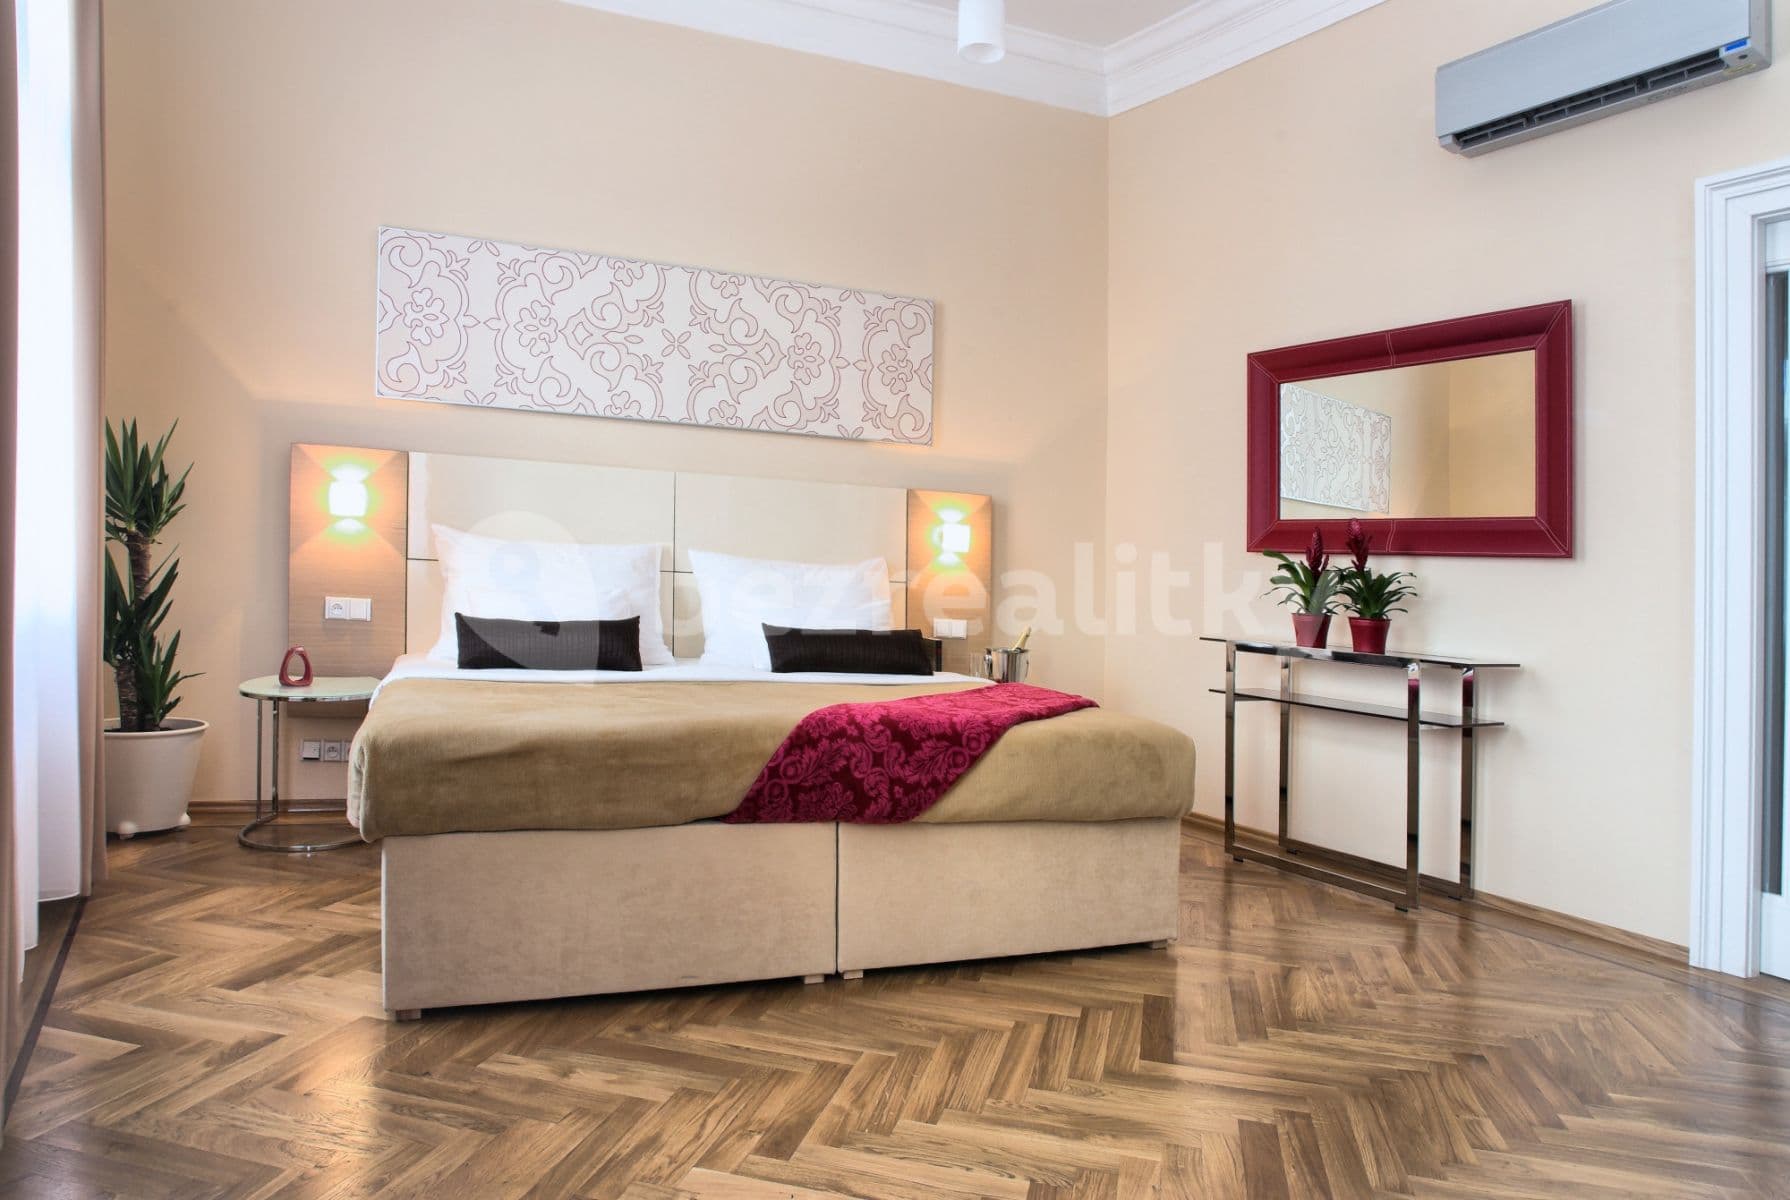 2 bedroom flat to rent, 80 m², Karoliny Světlé, Prague, Prague